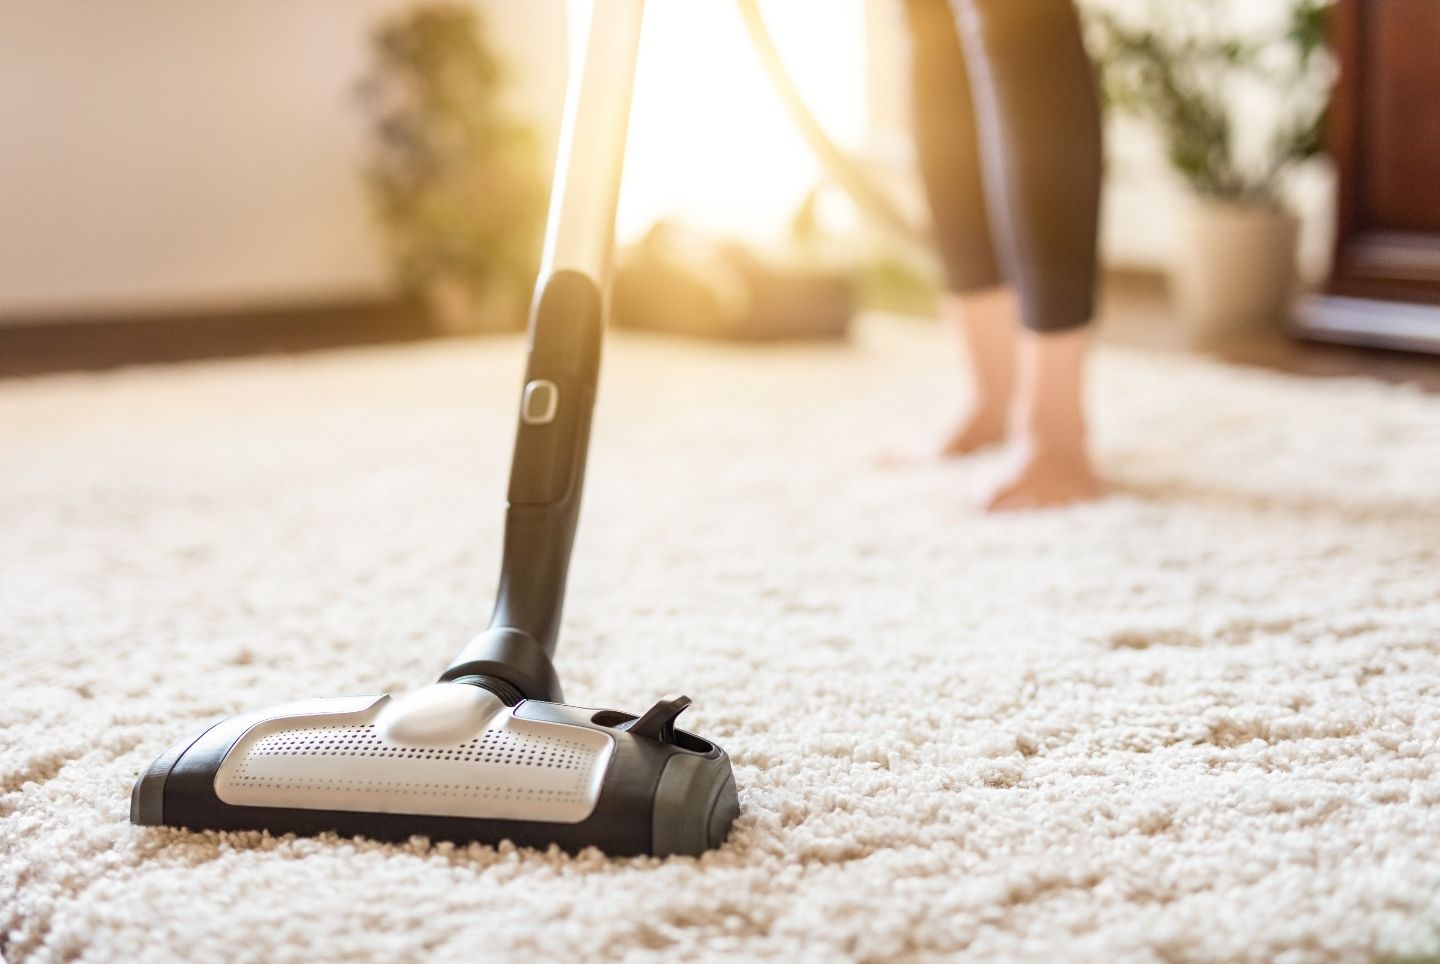 Städschema – Hur ofta ska man rengöra vad i hemmet?